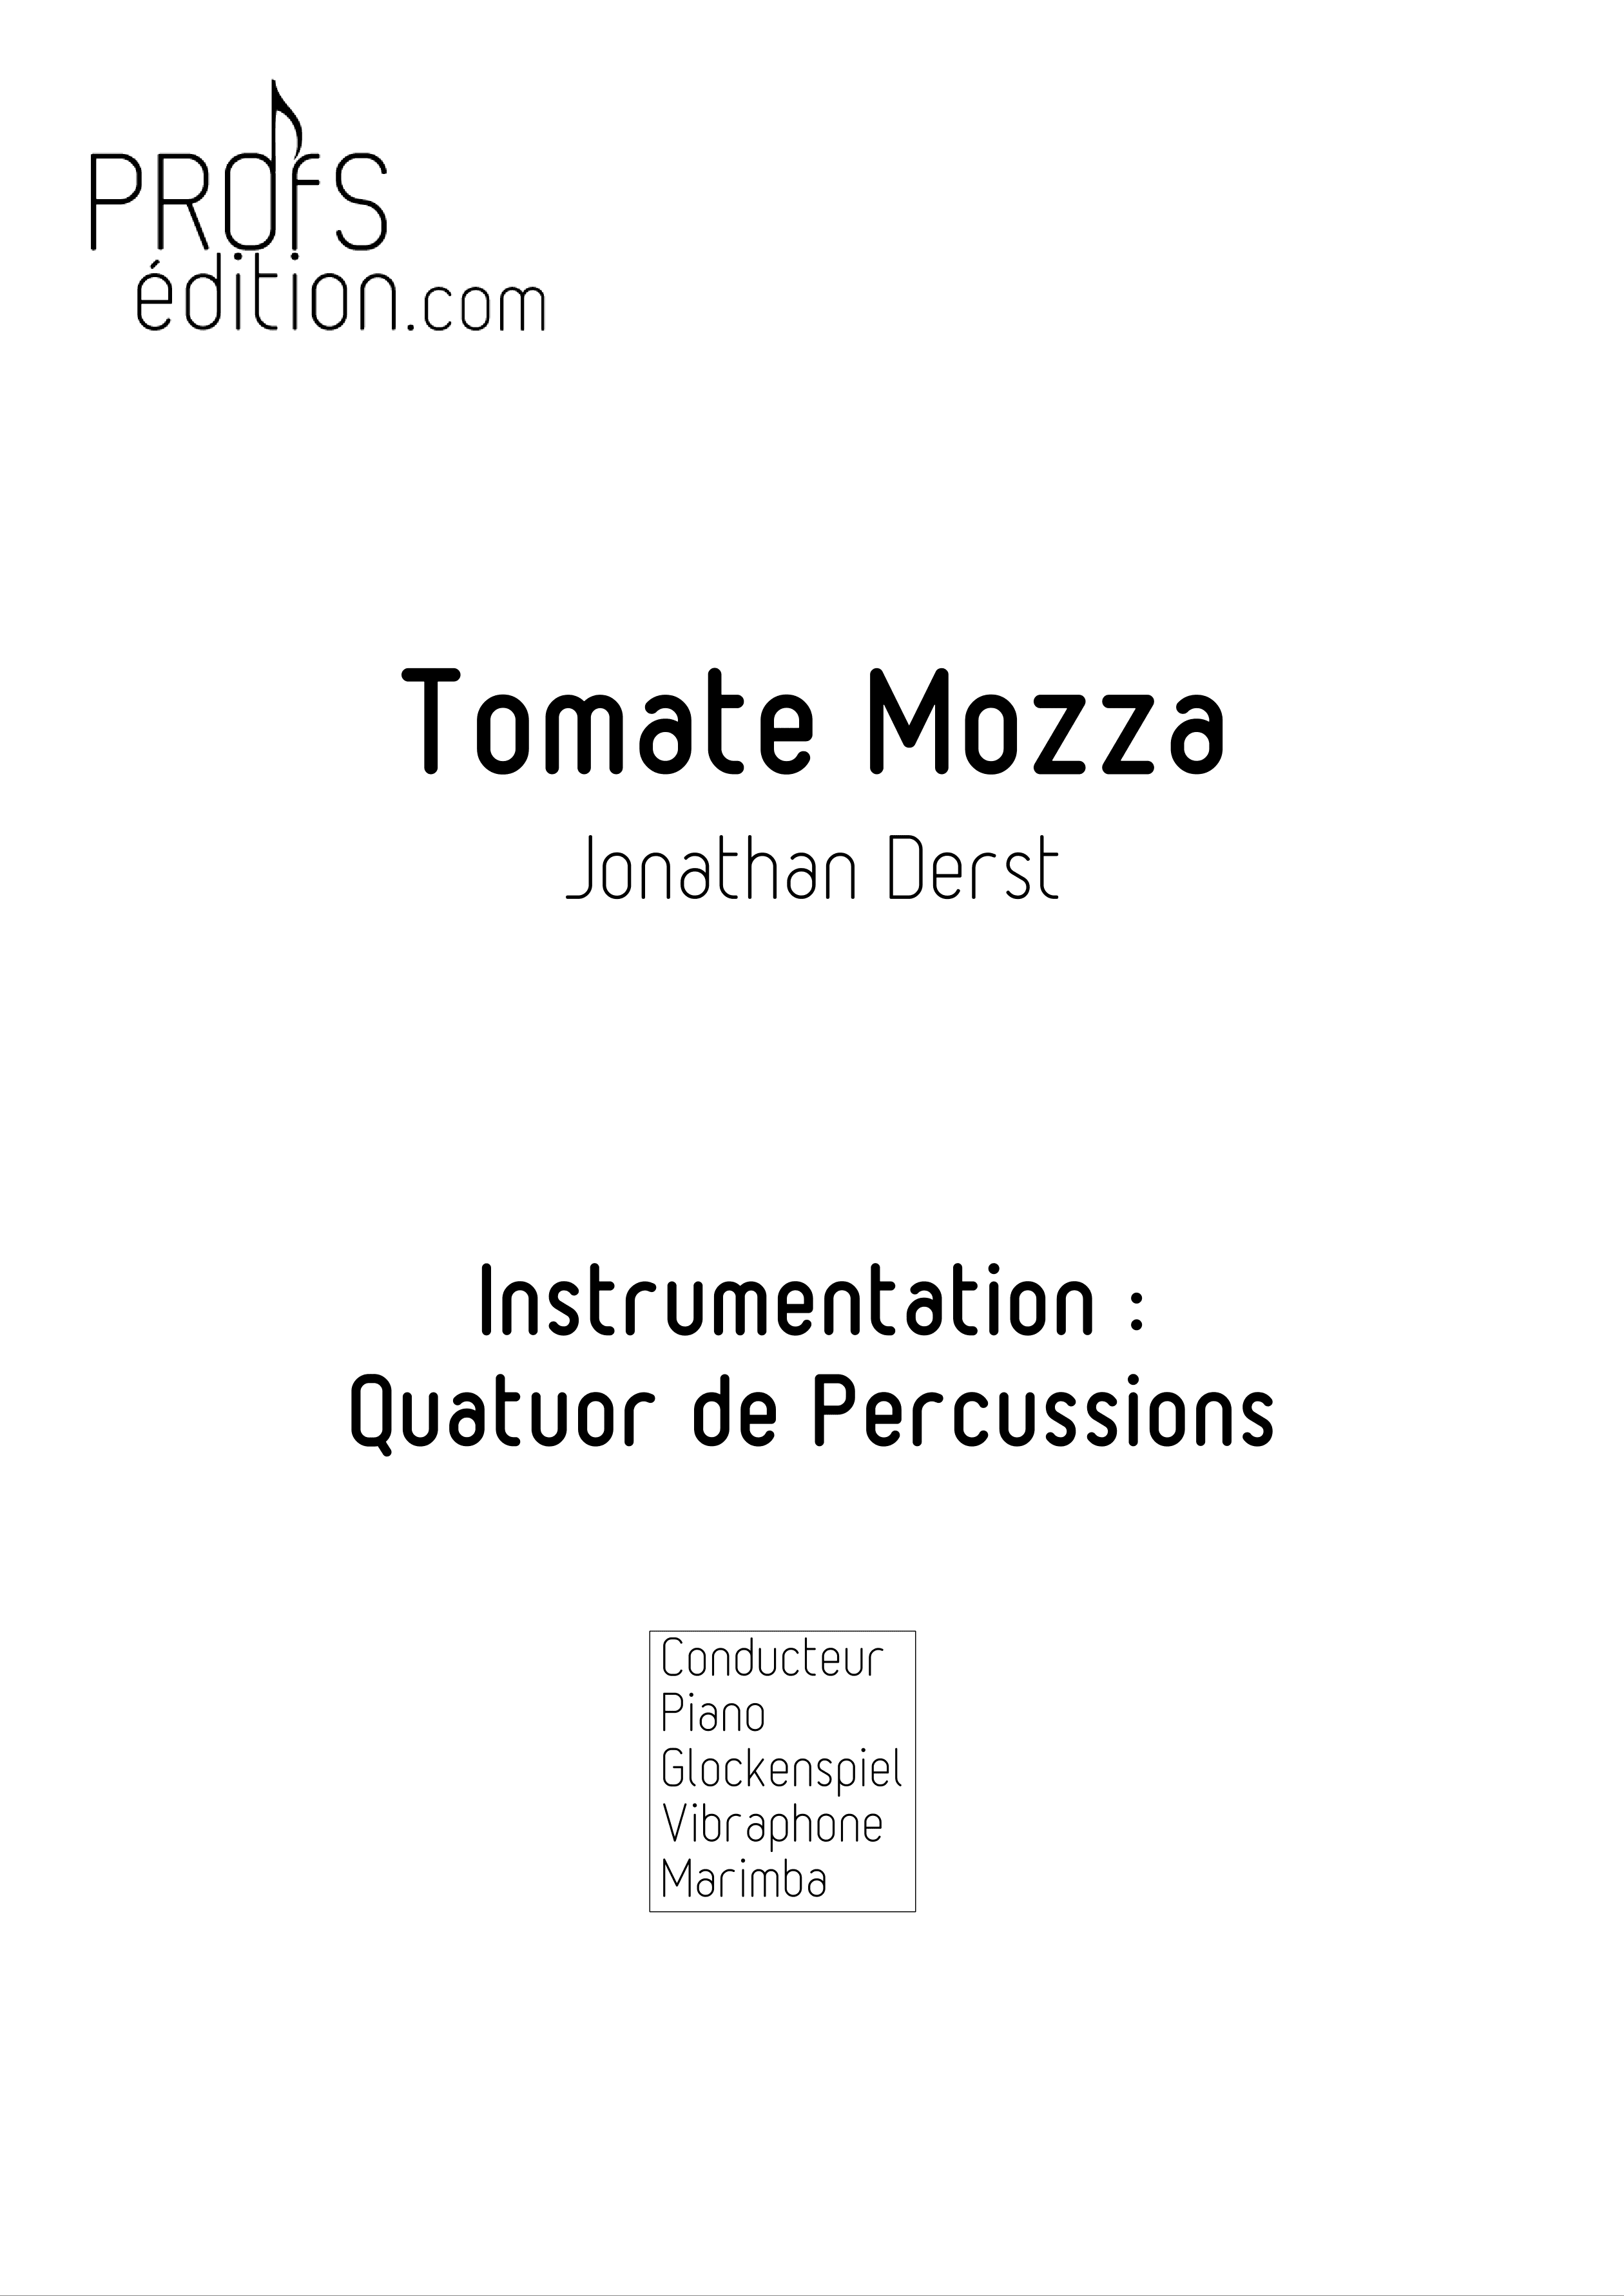 Tomate Mozza - Quatuor de Percussions - DERST J. - front page